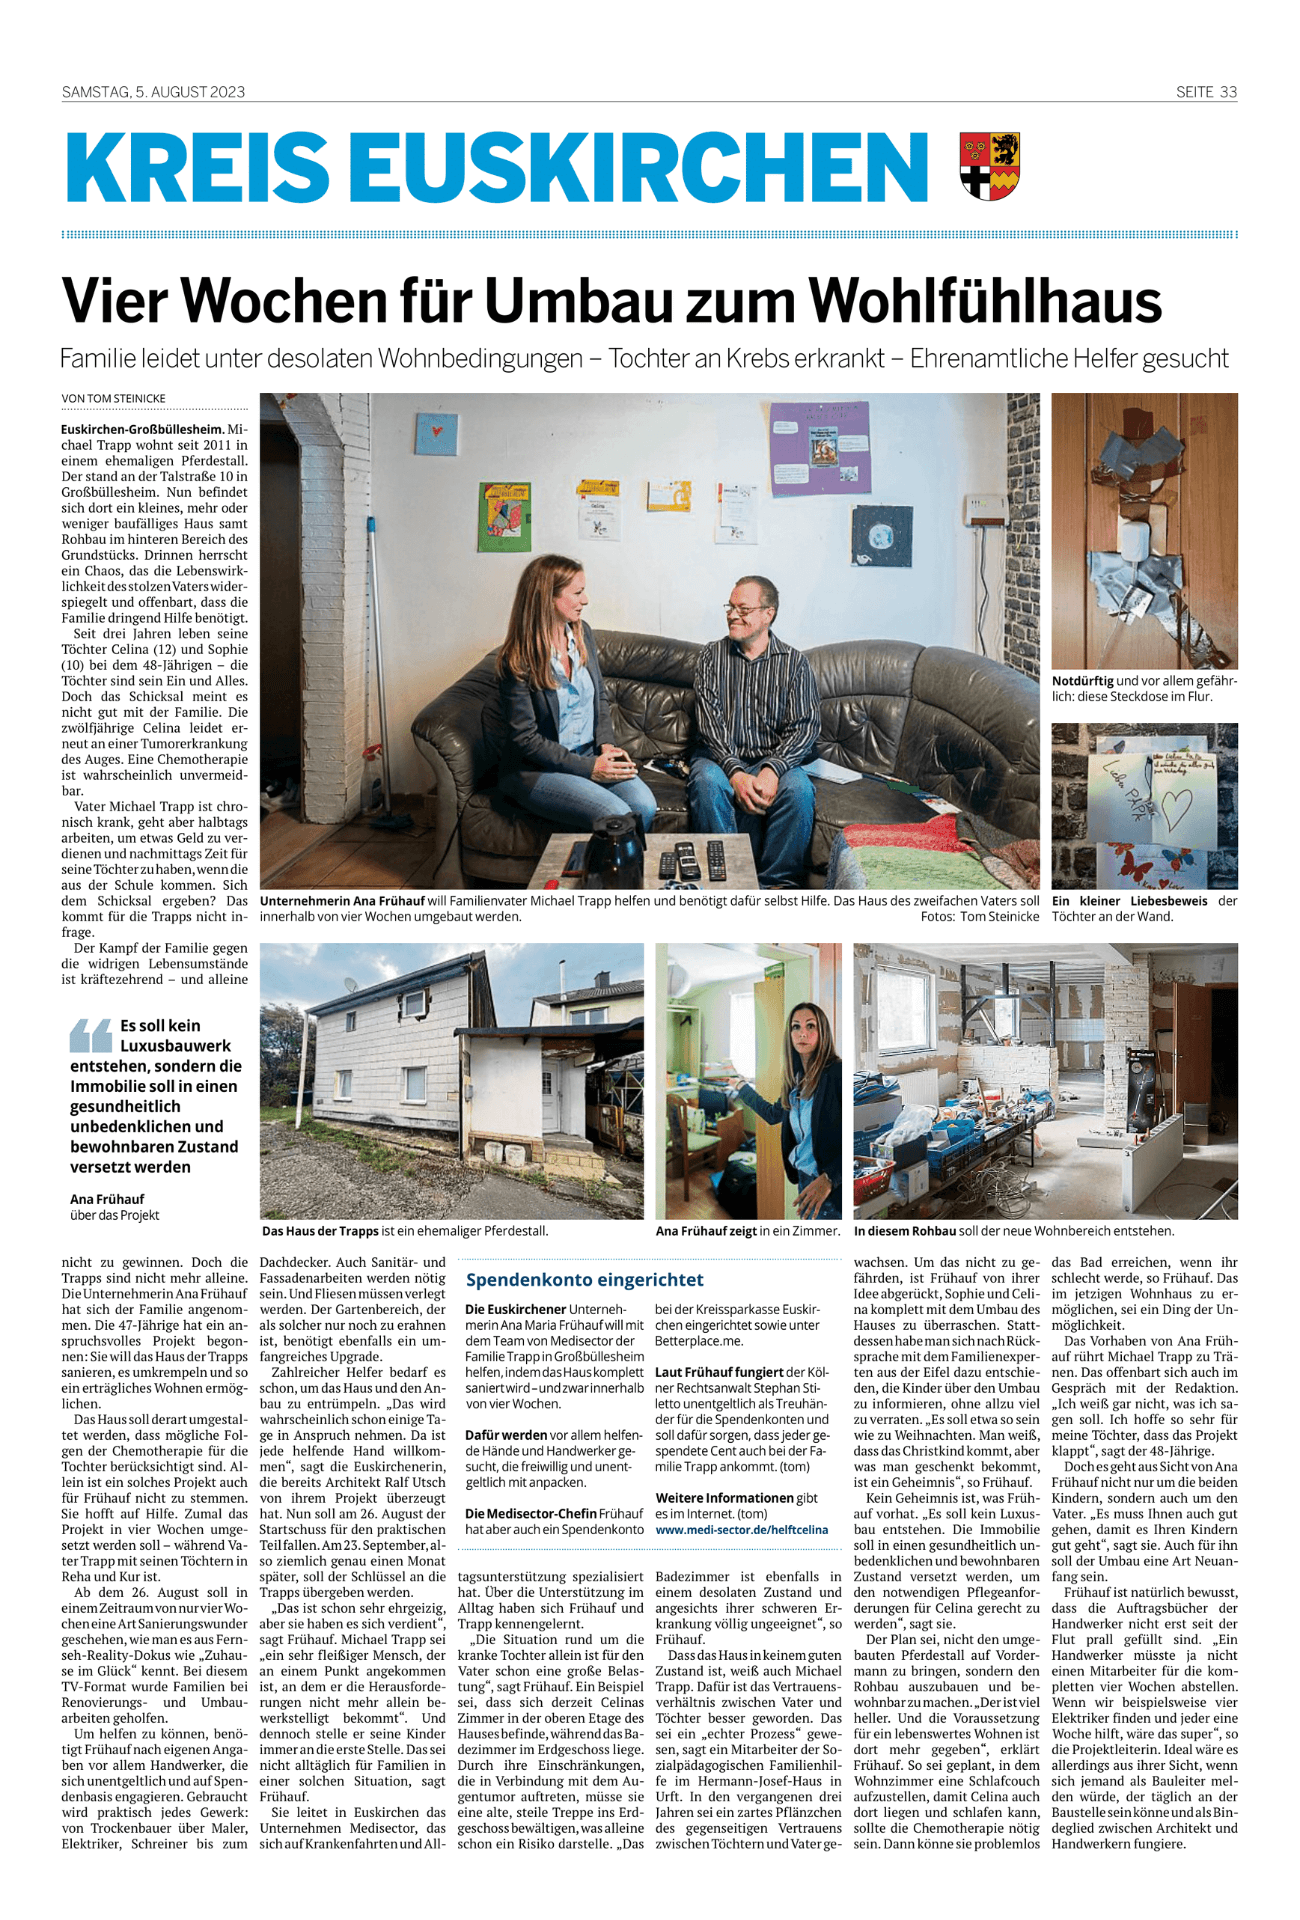 Zeitung berichtet über das besondere Projekt Helft Celina aus dem Kreis Euskirchen